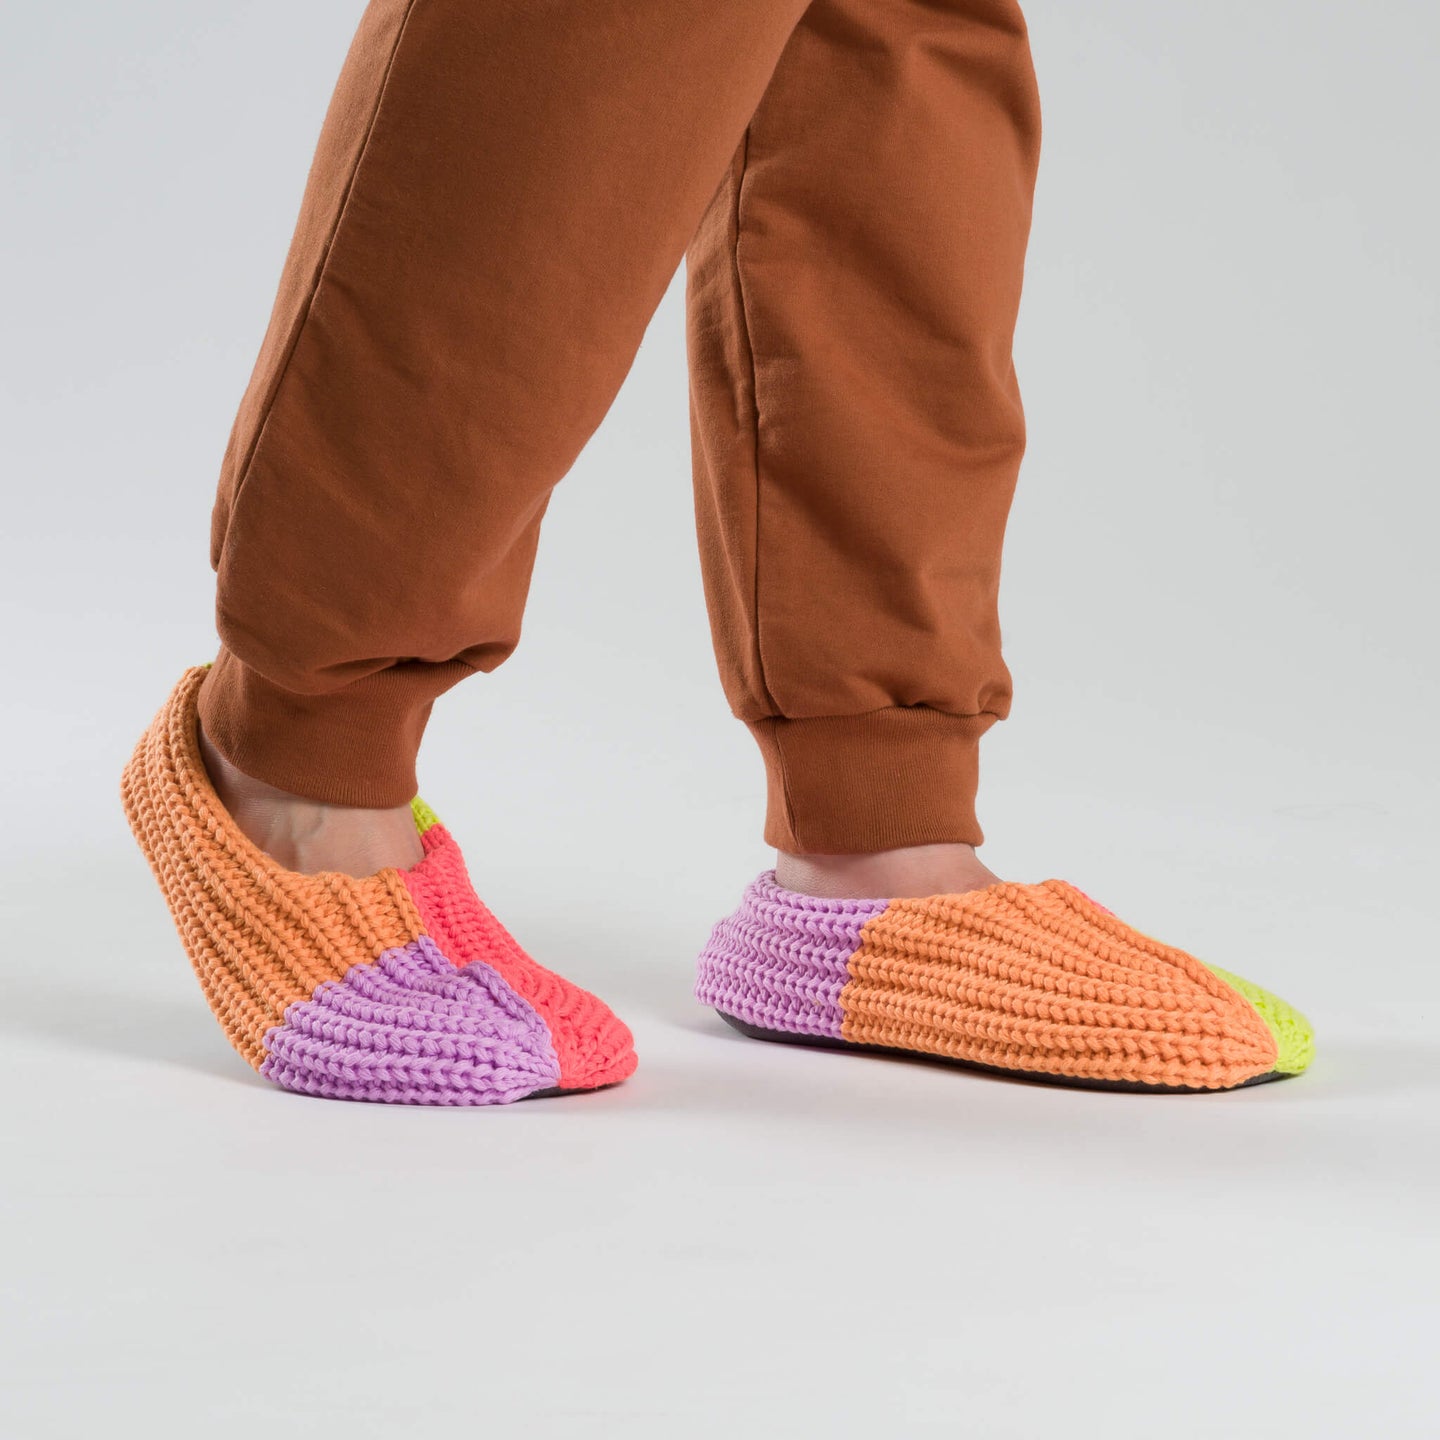 Quattro Rib Slippers Knit Colorblock Cozy Colorful